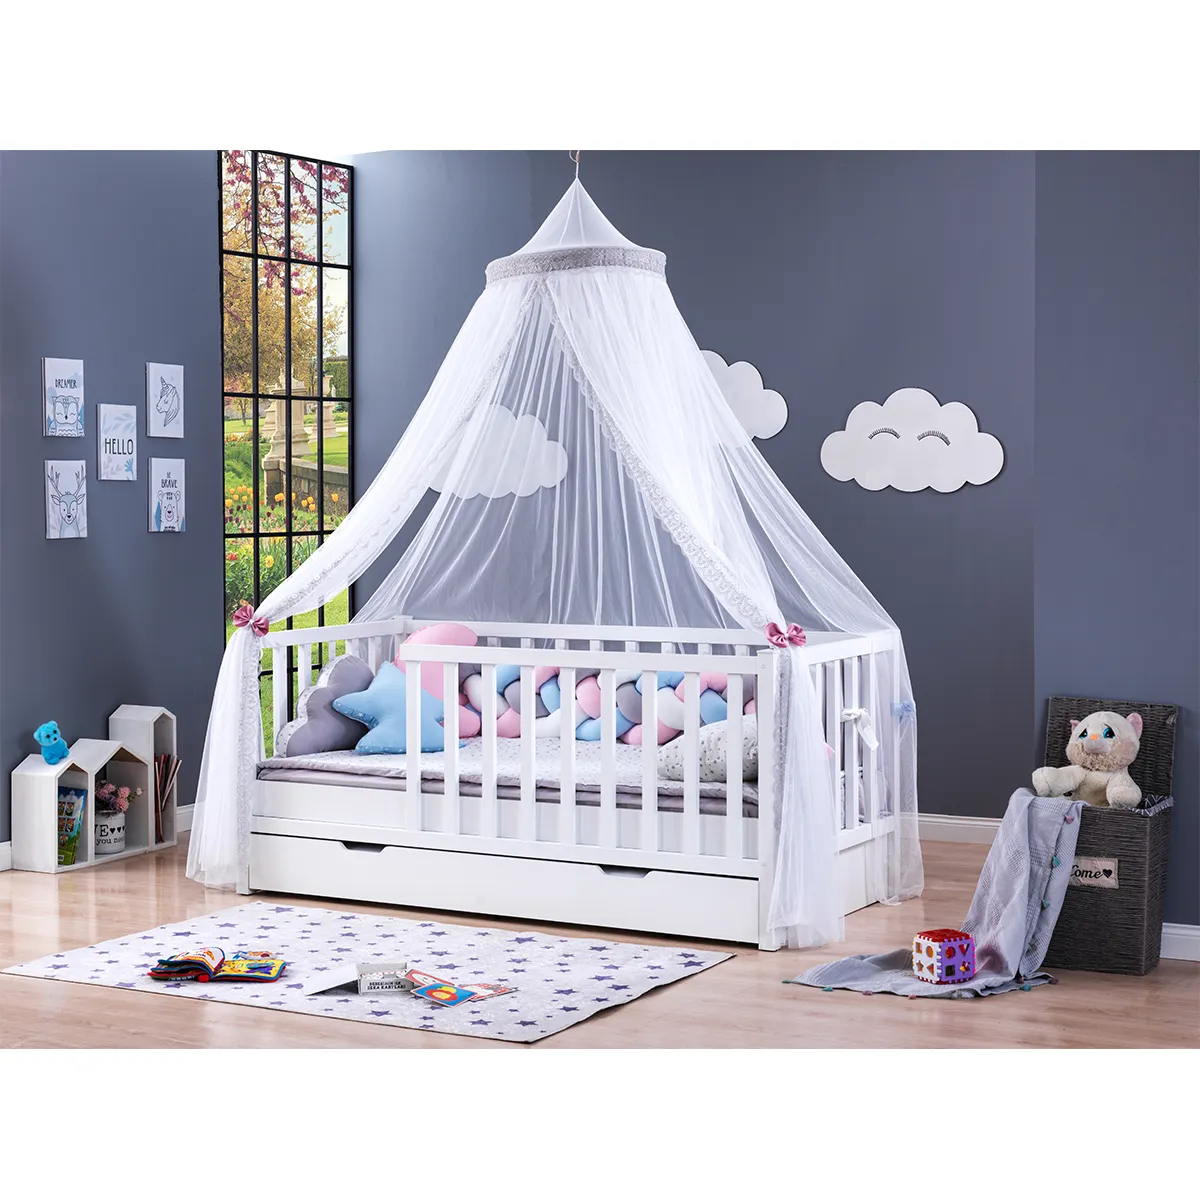 Berfa bebek yatağı ahşap bebek karyolası yüksek kaliteli kumaş ve malzemeler Anti mikrop ahşap hijyenik yatak odası takımı bebekler için türkiye'de yapılan